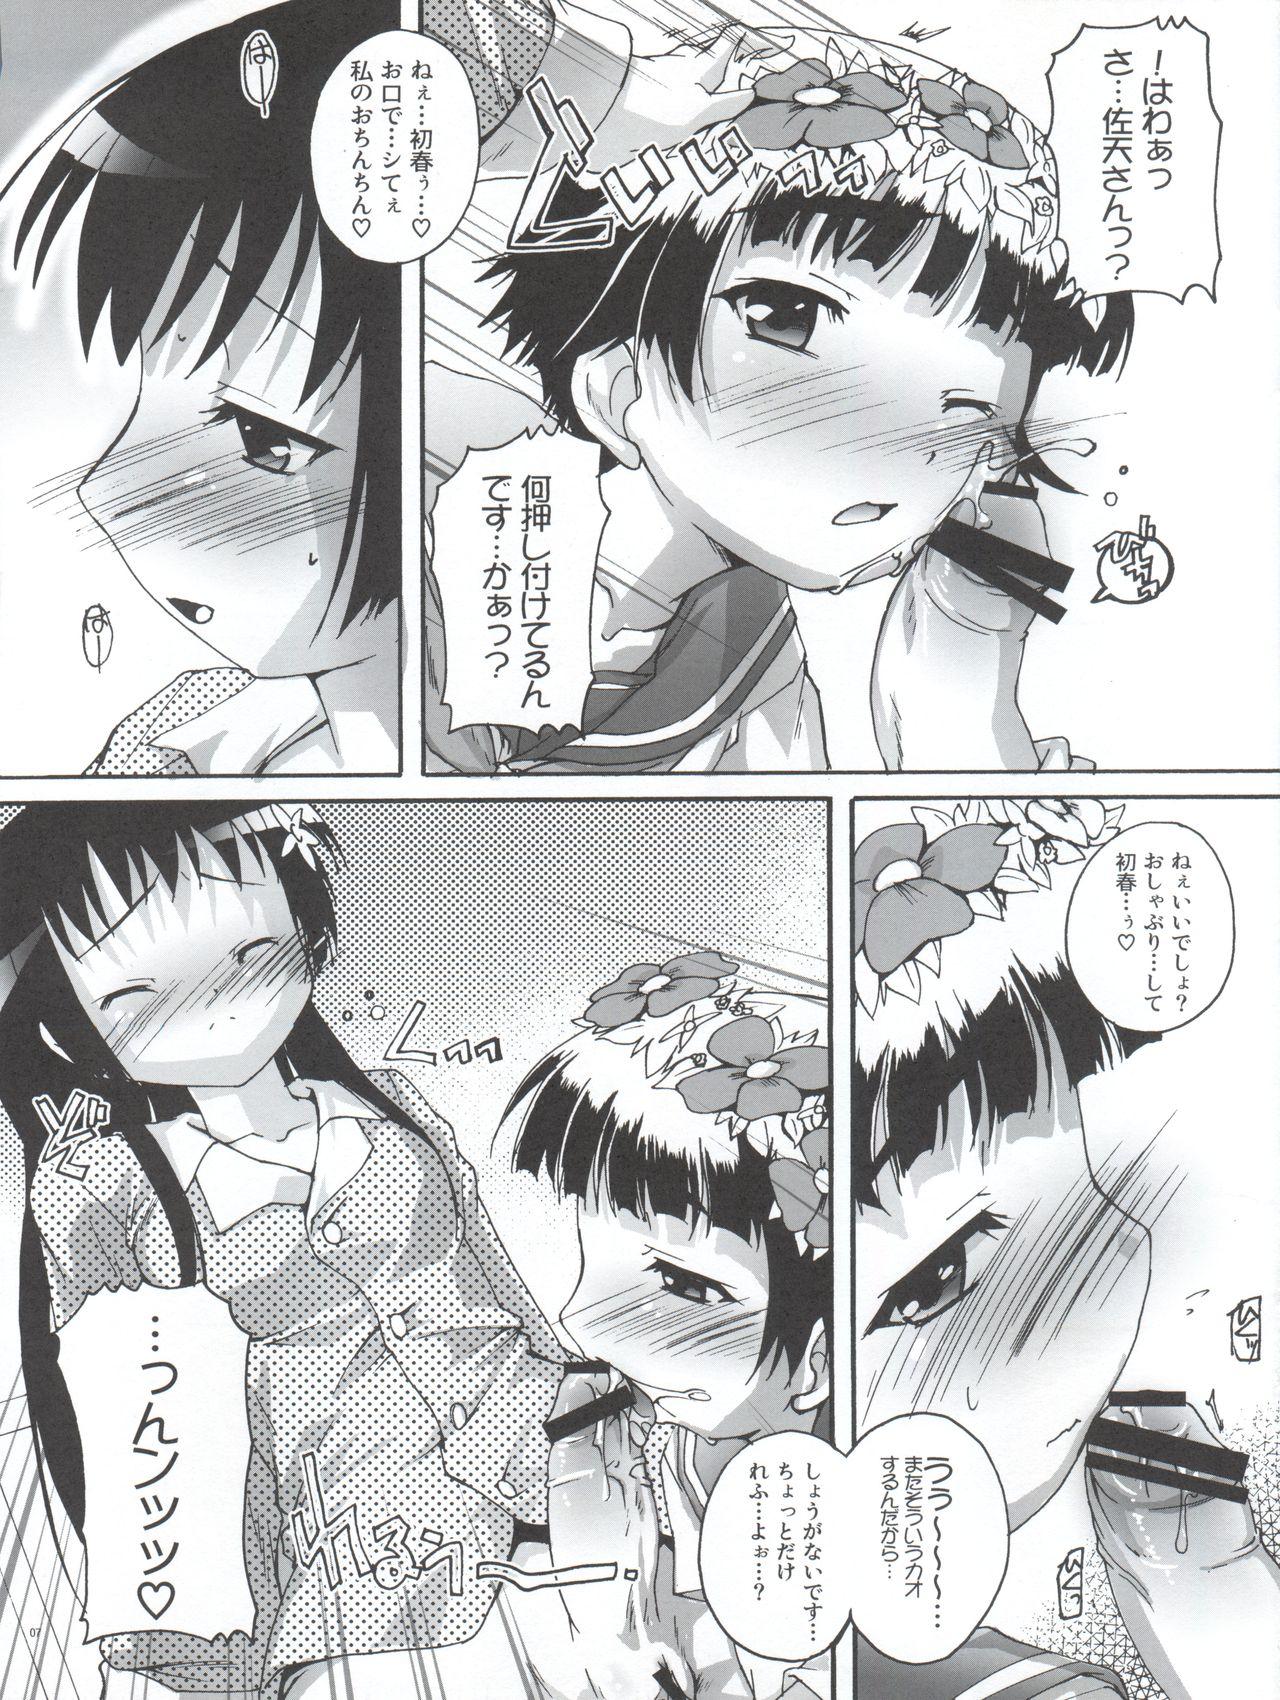 Private Sex Kanzen Nenshou 18 Judgment no Oshigoto desu no! - Toaru kagaku no railgun Parody - Page 7